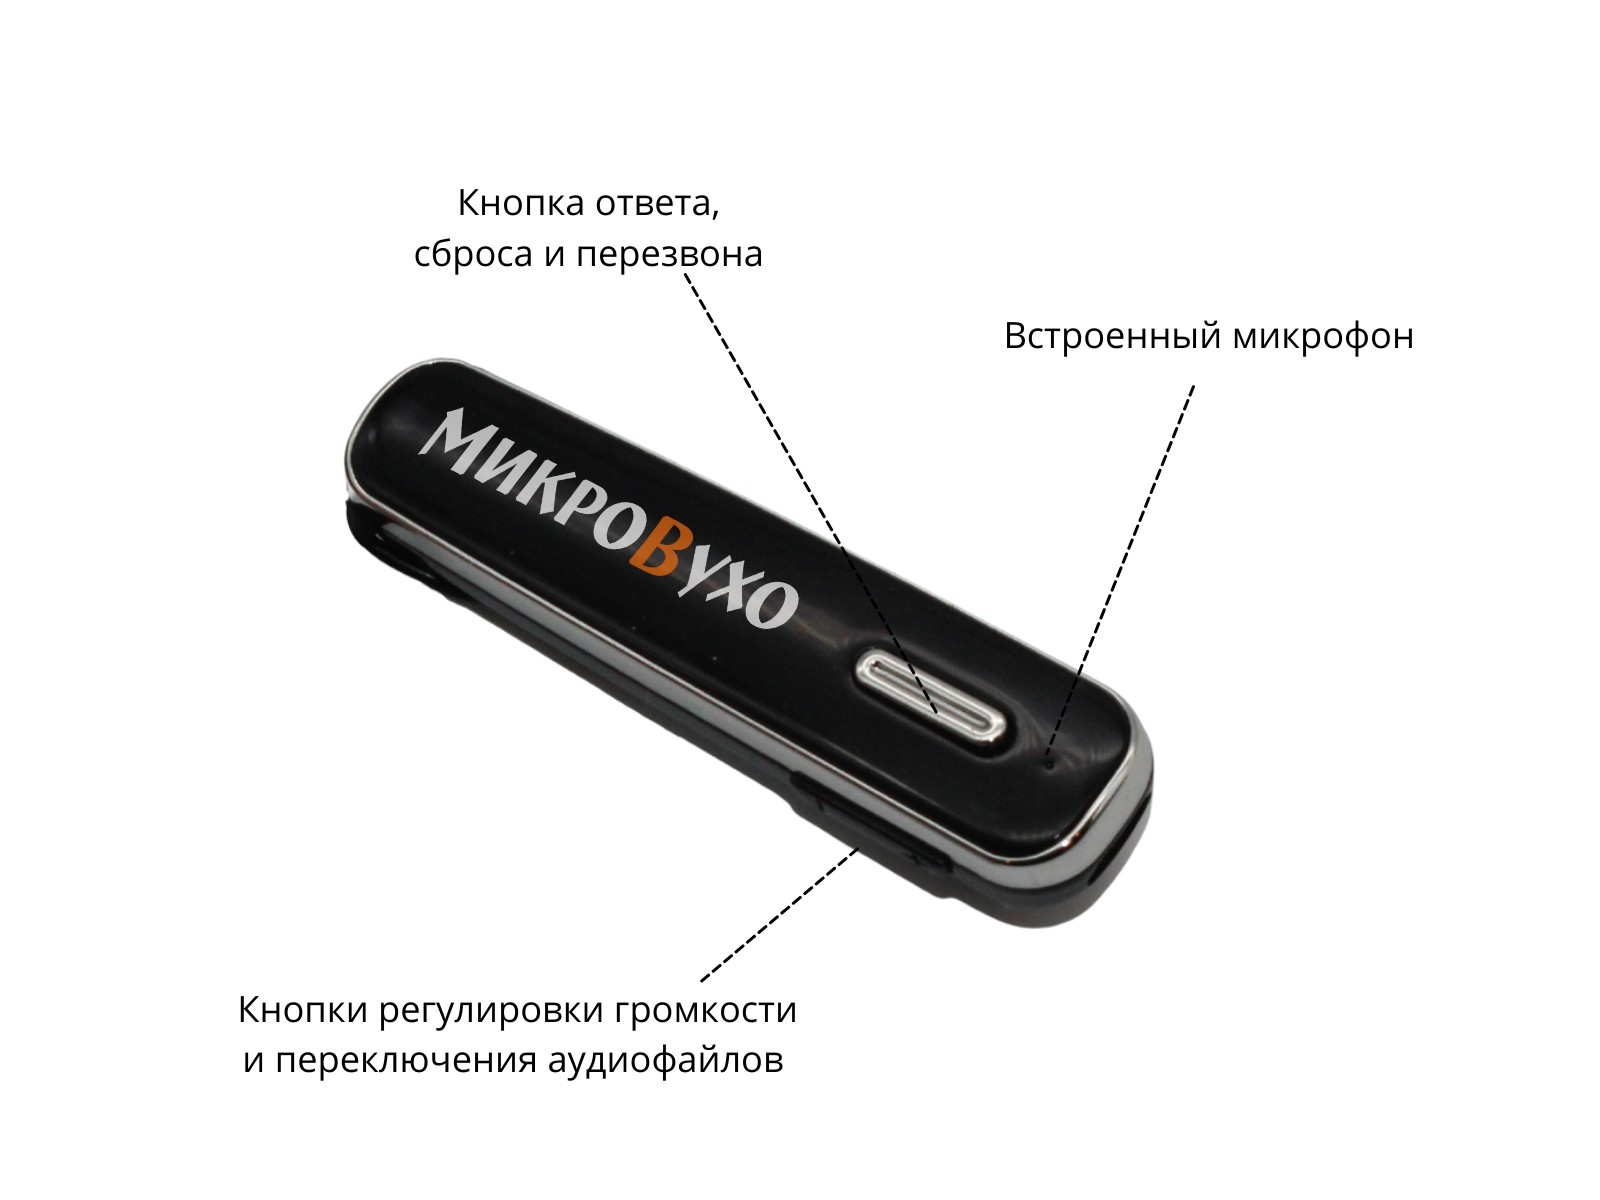 Гарнитура Bluetooth Box Premier Lite с капсульным микронаушником Nano 4 мм 3